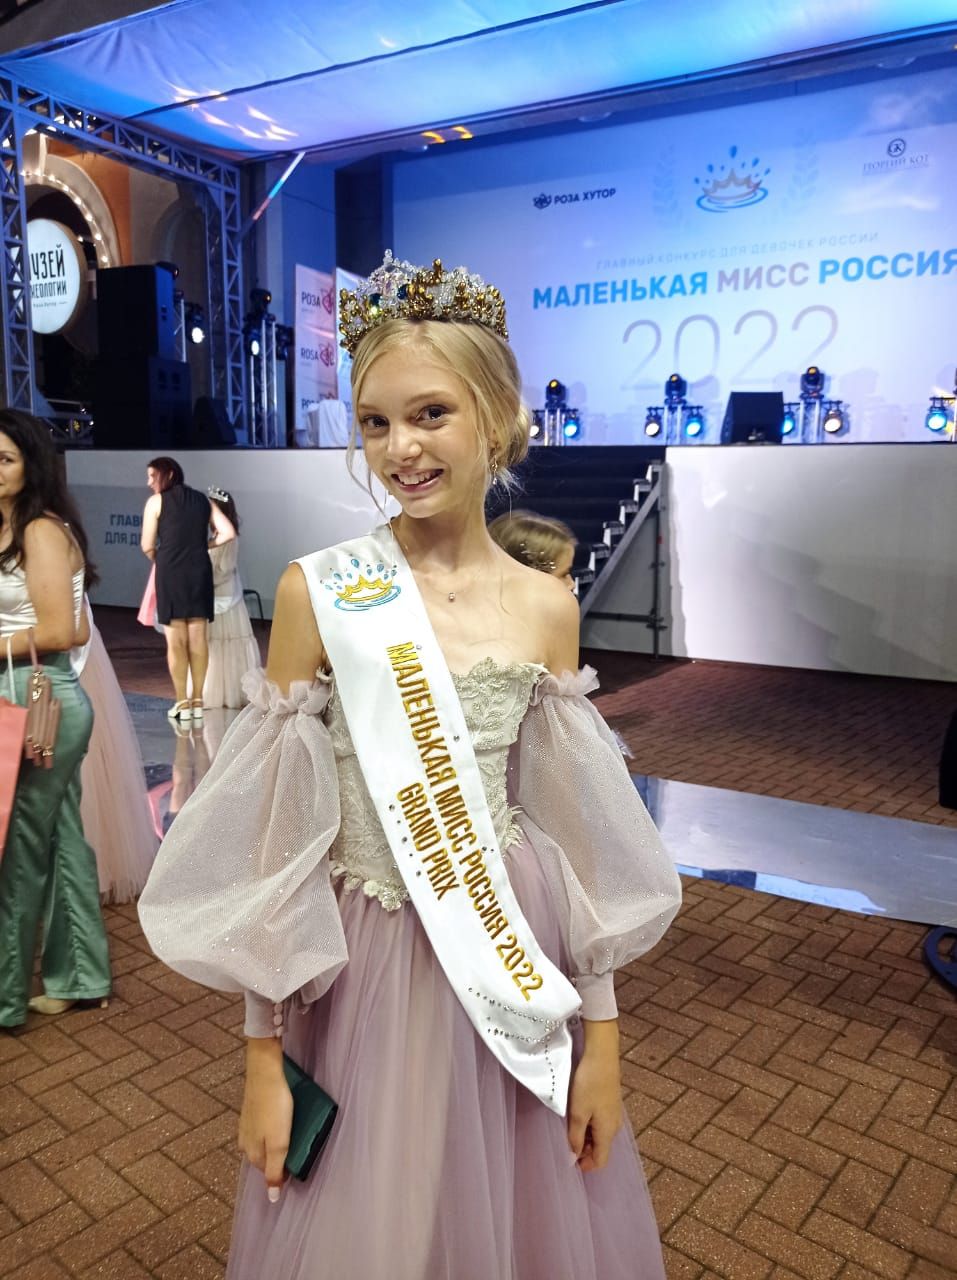 Юная модель из Сергиева Посада поедет на финал конкурса красоты «ЮНАЯ МИСС РОССИЯ-2016»